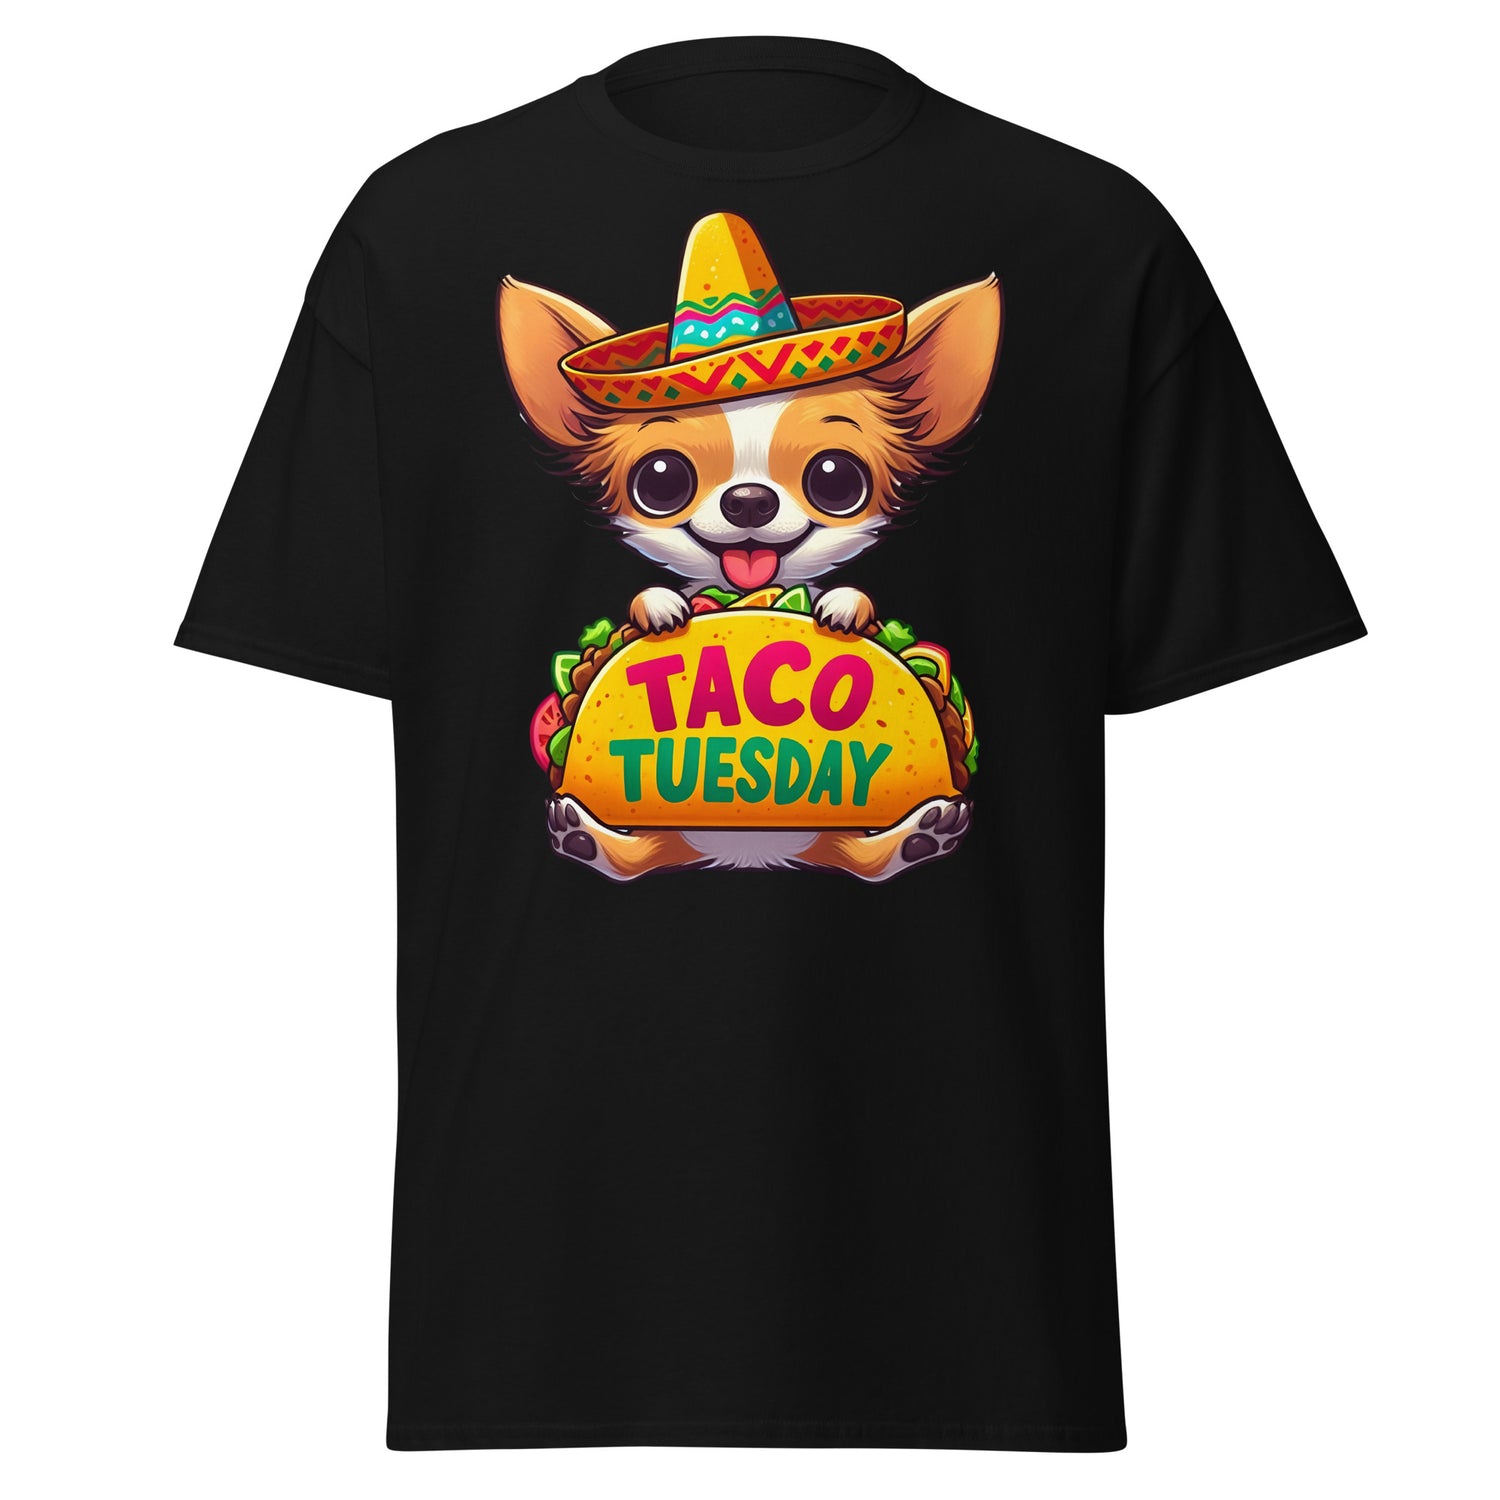 Taco Tuesday Chihuahua Tee